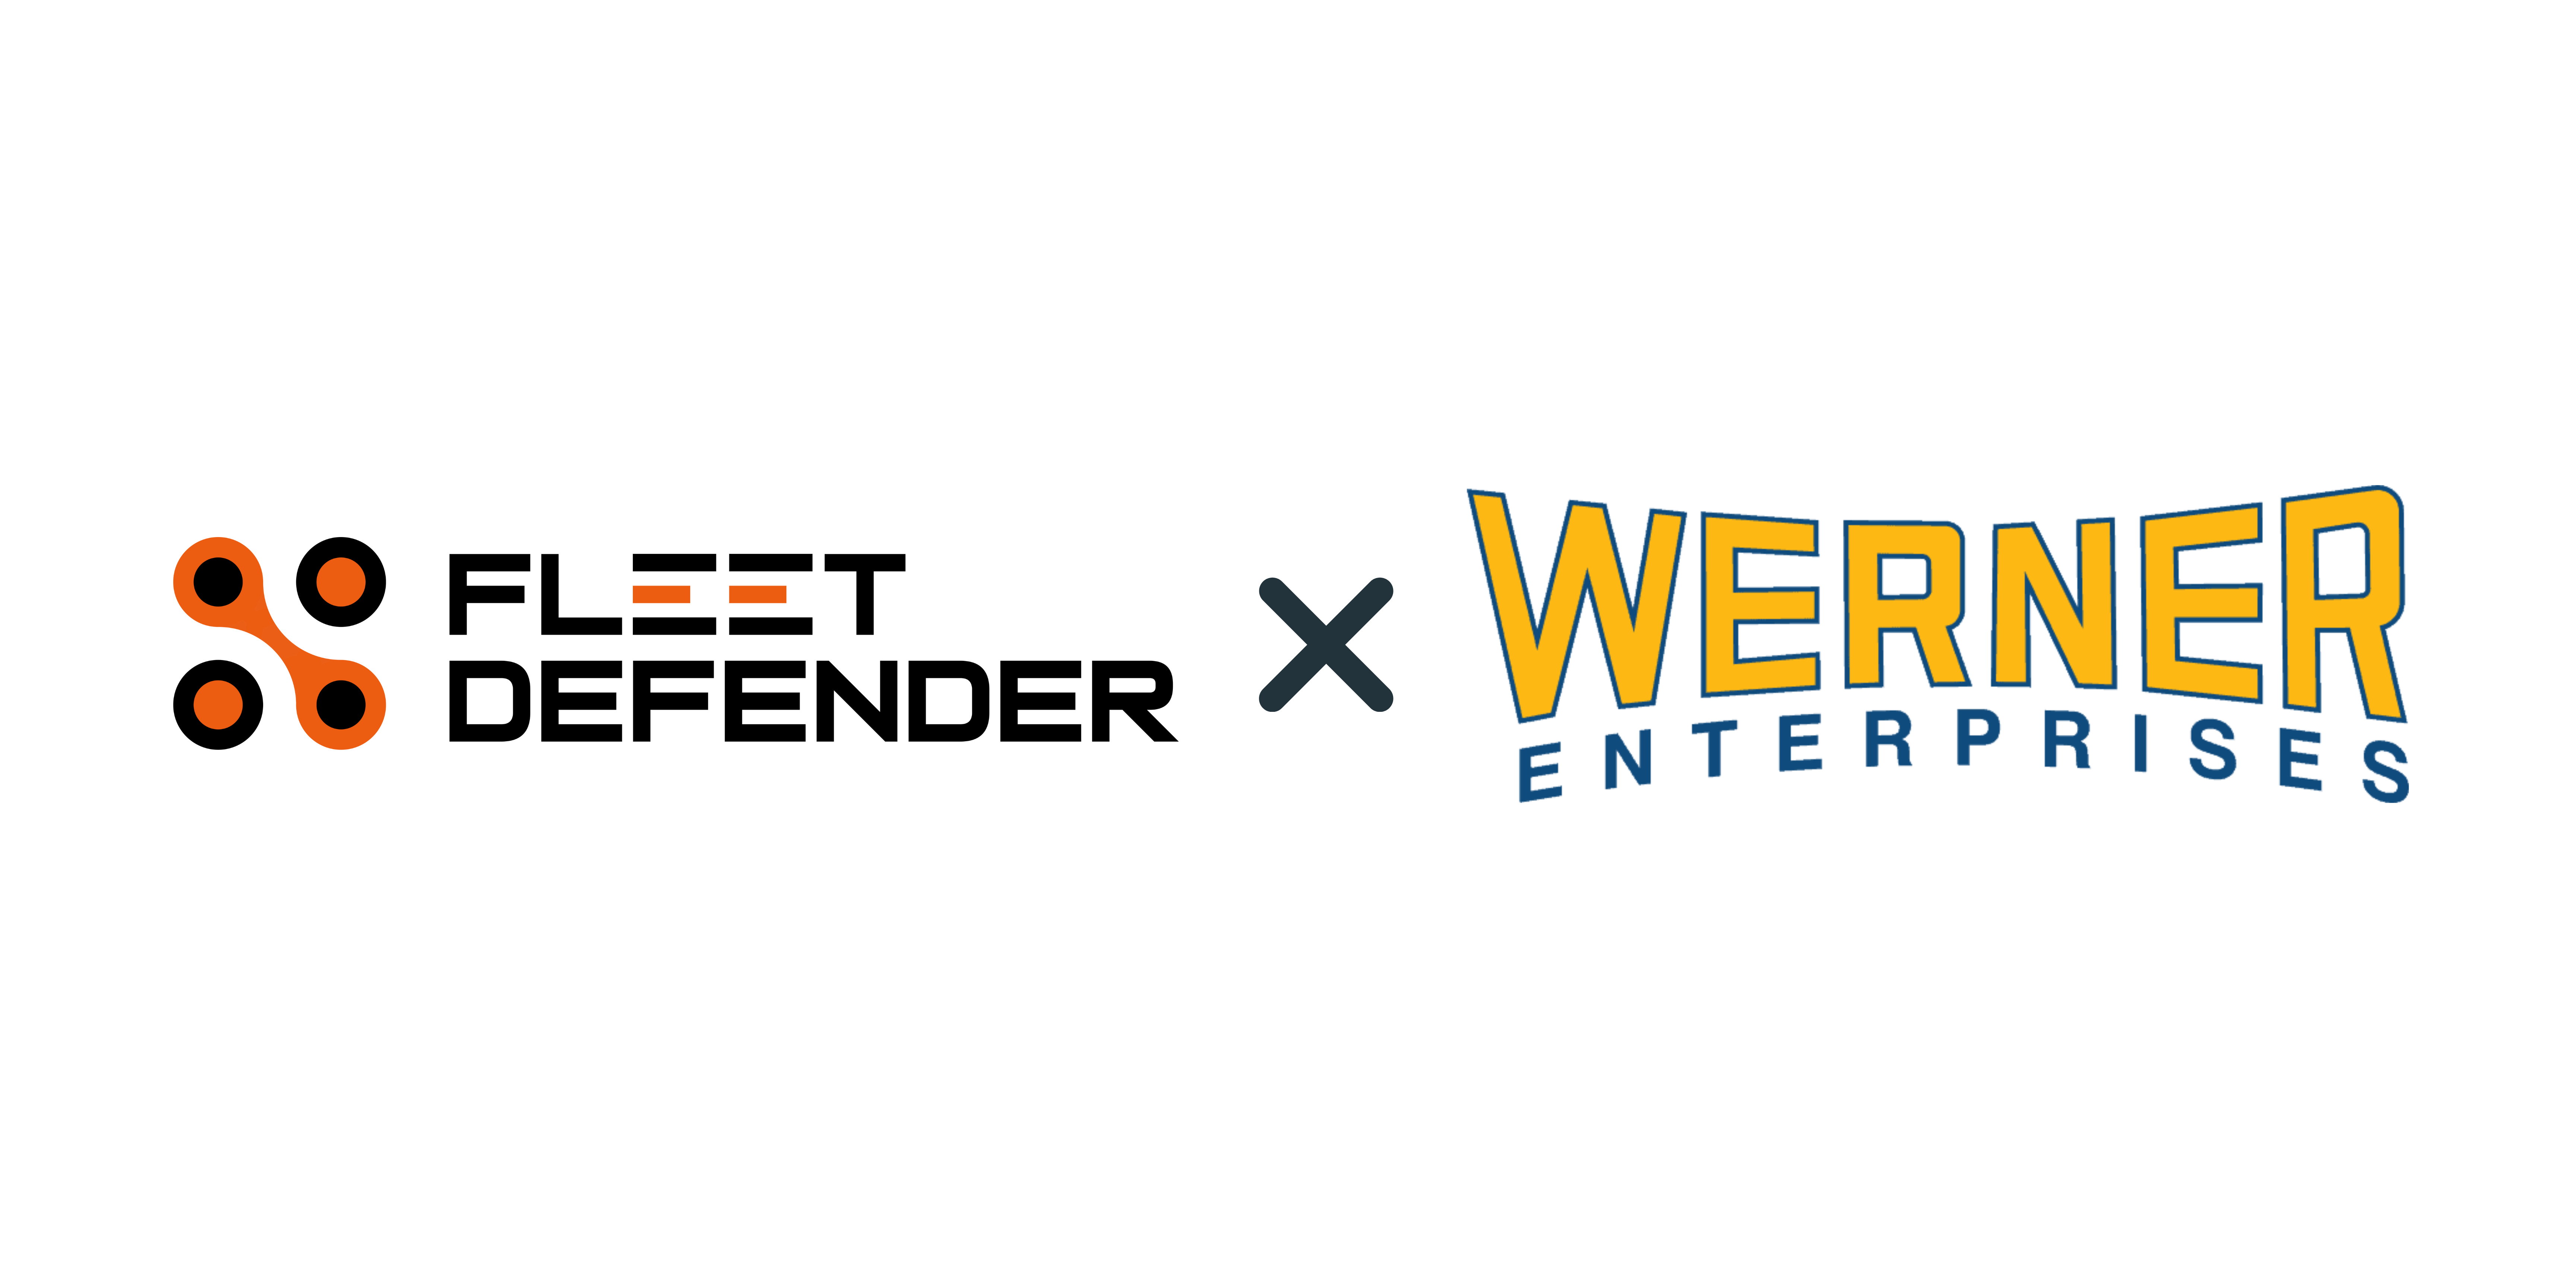 Fleet Defender Signs Werner Enterprises For On-Platform Cybersecurity.